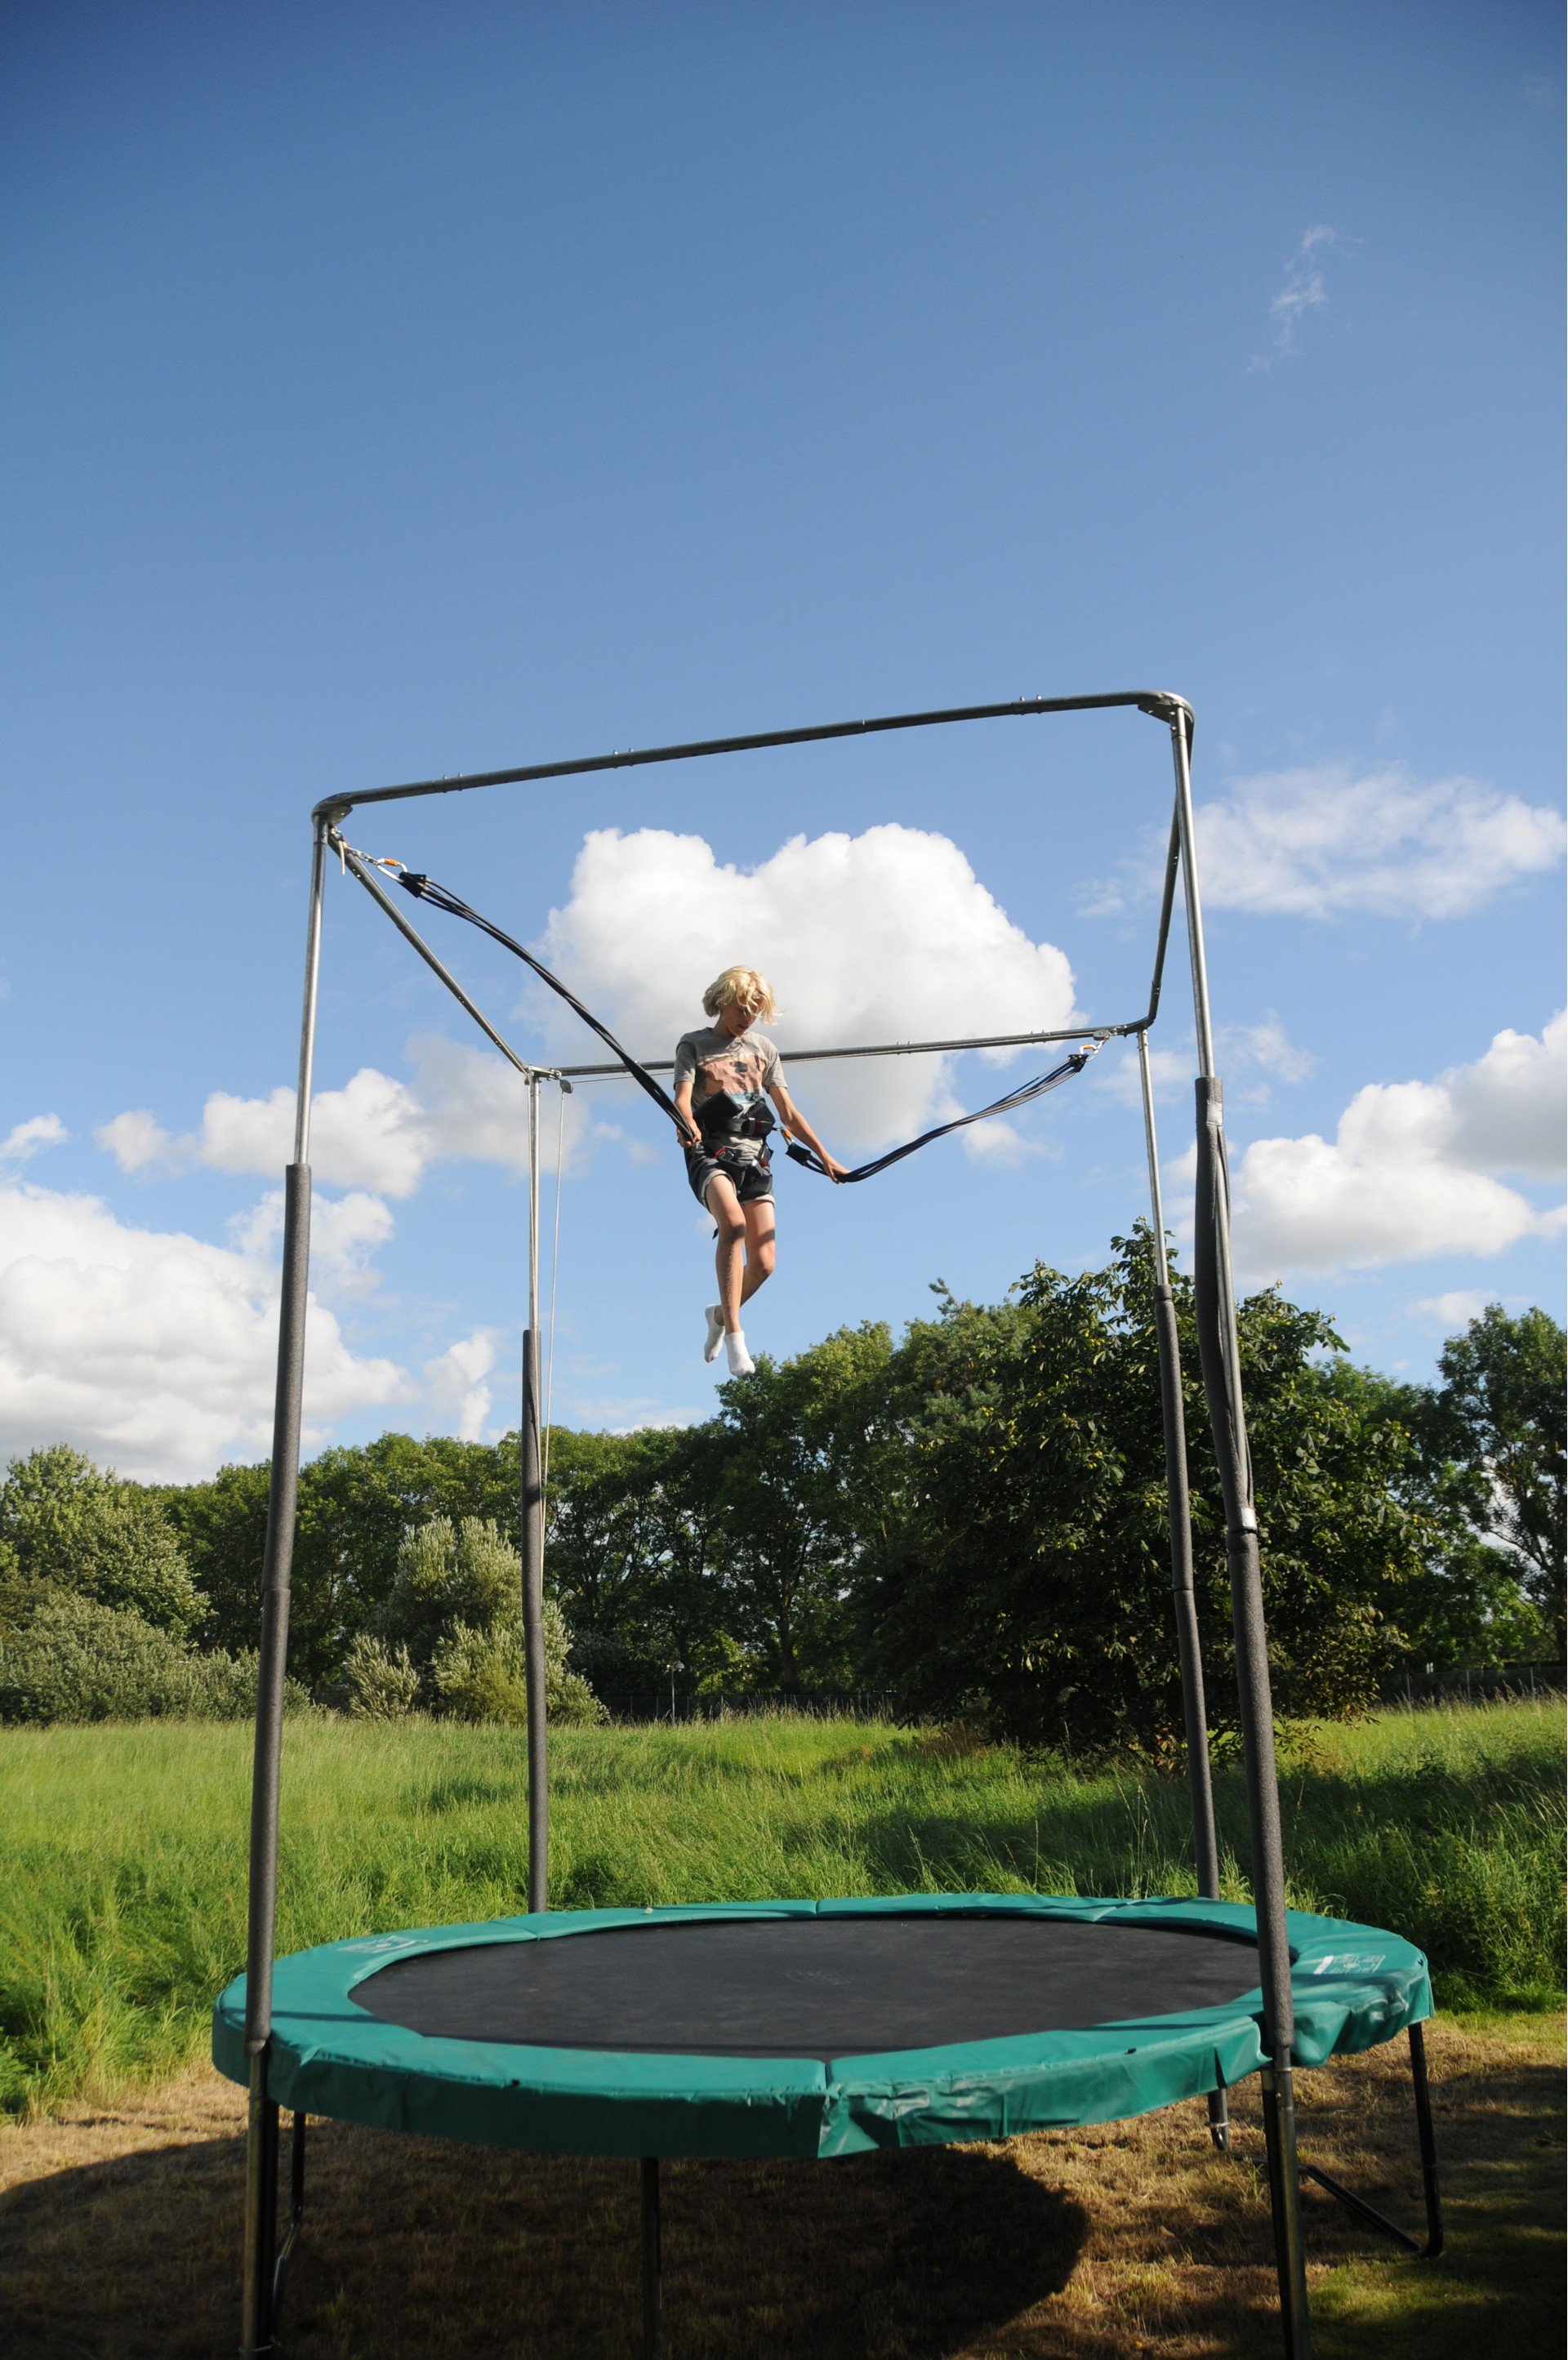 brugervejledning Tigge Aftensmad Købsguide: Find et godt trampolin tilbud på nettet